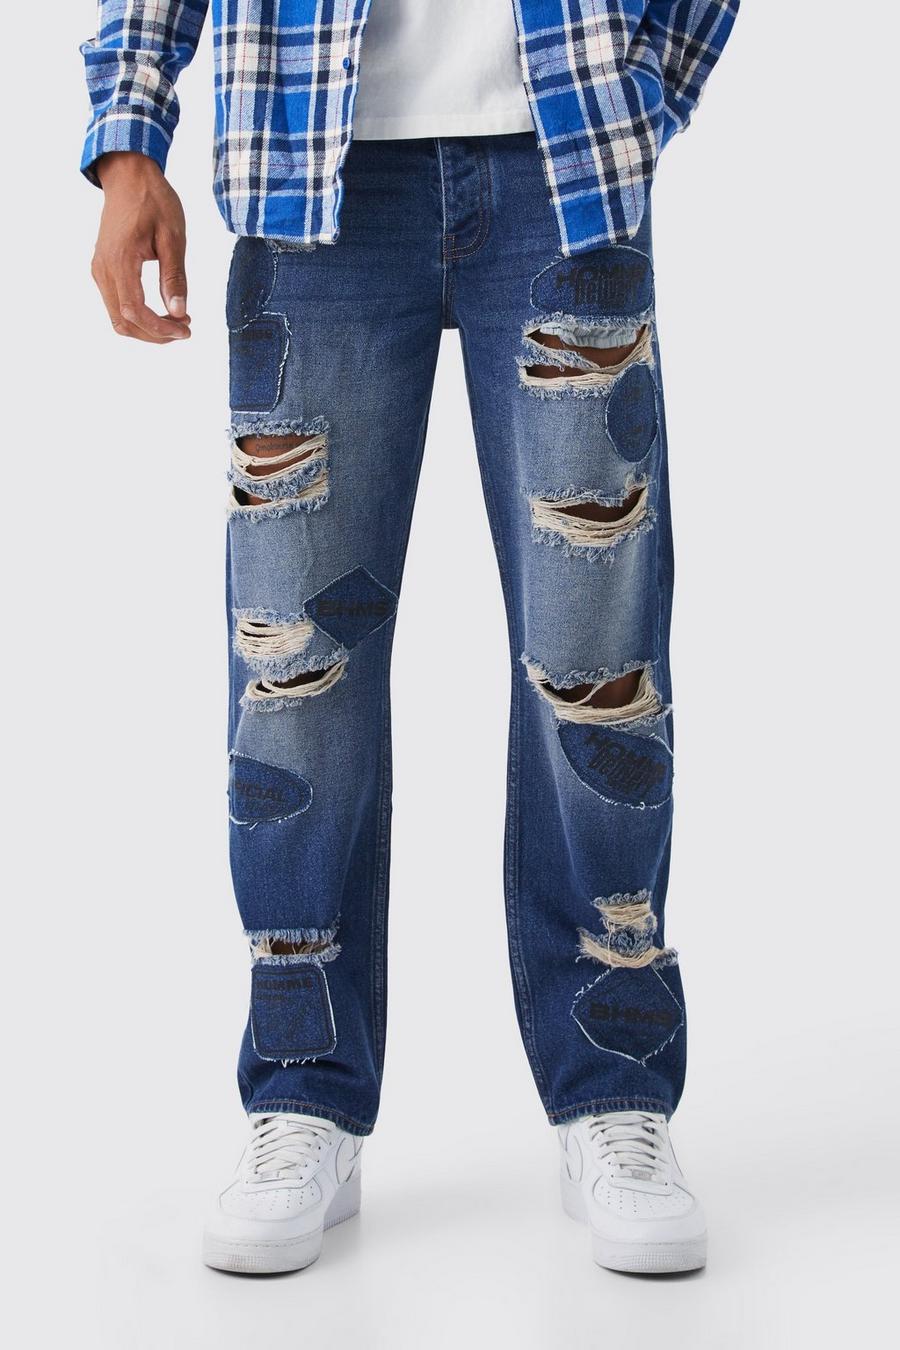 Jeans Tall rilassati in denim rigido con applique strappati, Antique blue